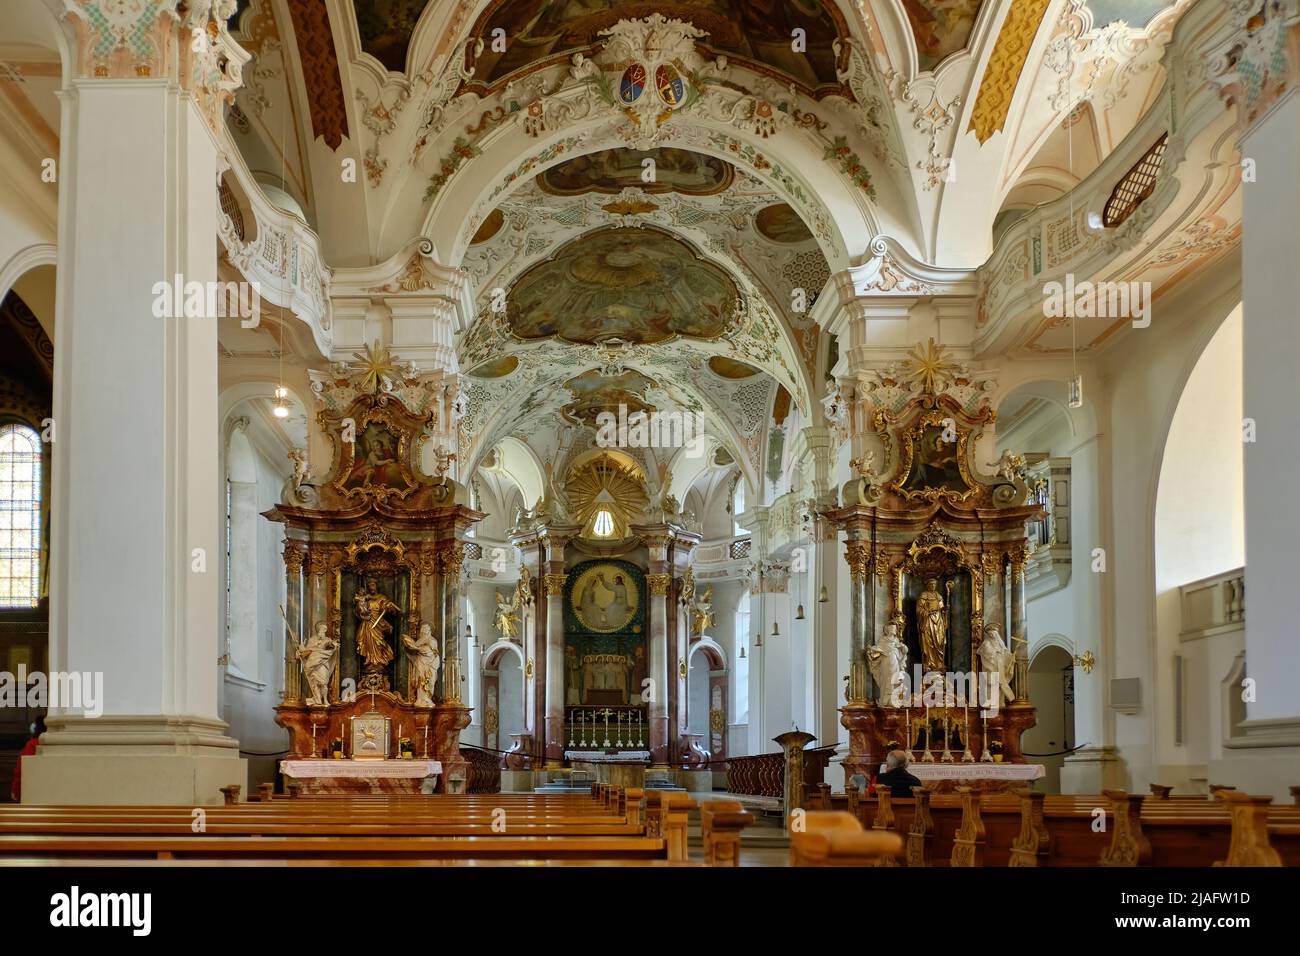 Interior de la iglesia del monasterio de la Archabacique de San Martín del monasterio benedictino de Beuron, Alemania. Foto de stock